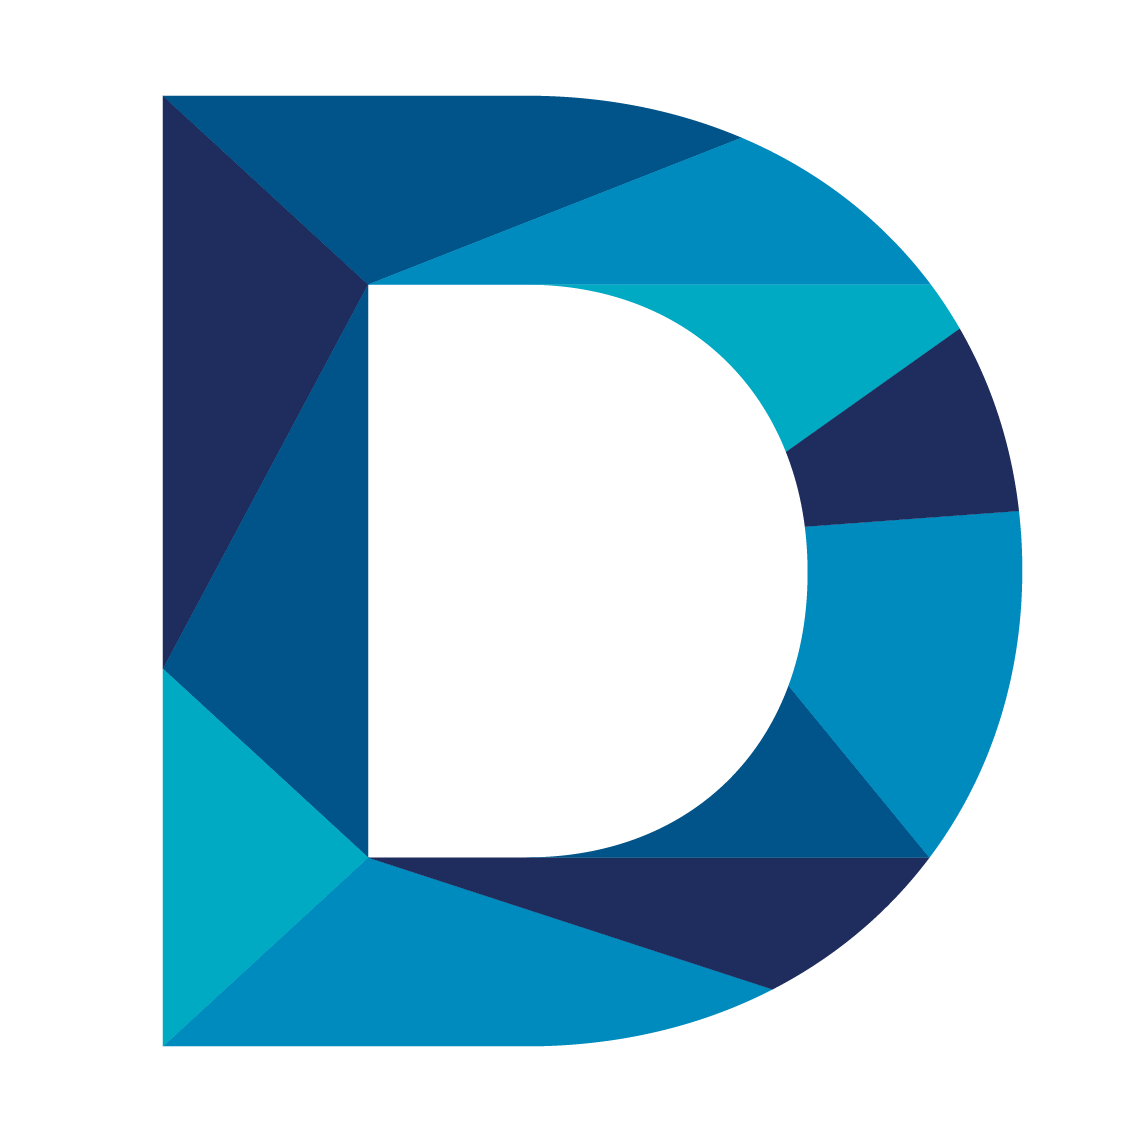 D Letter Logo Png Free Transparent Png Logos Images